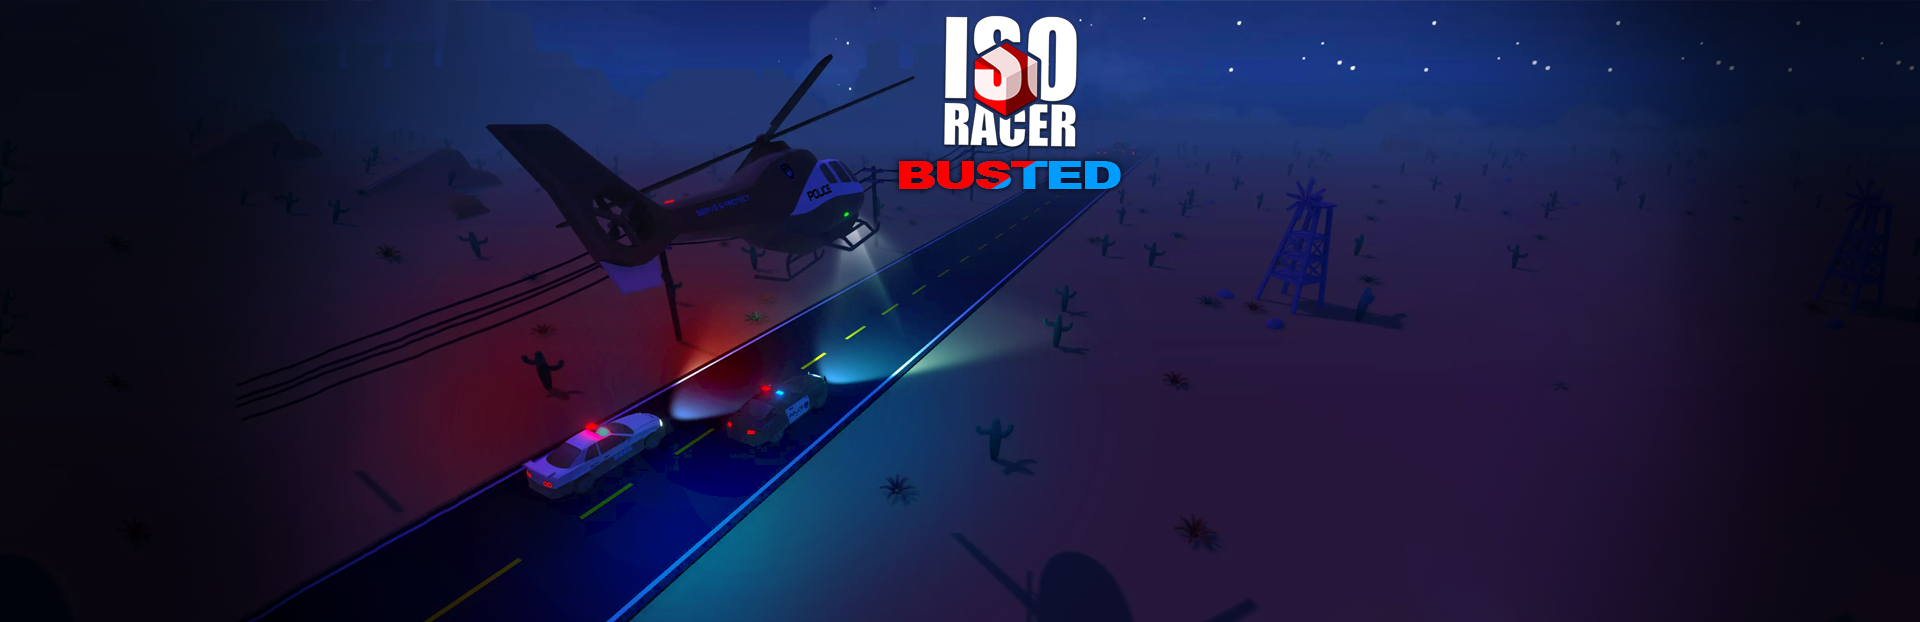 ชุมชน Steam :: Iso Racer